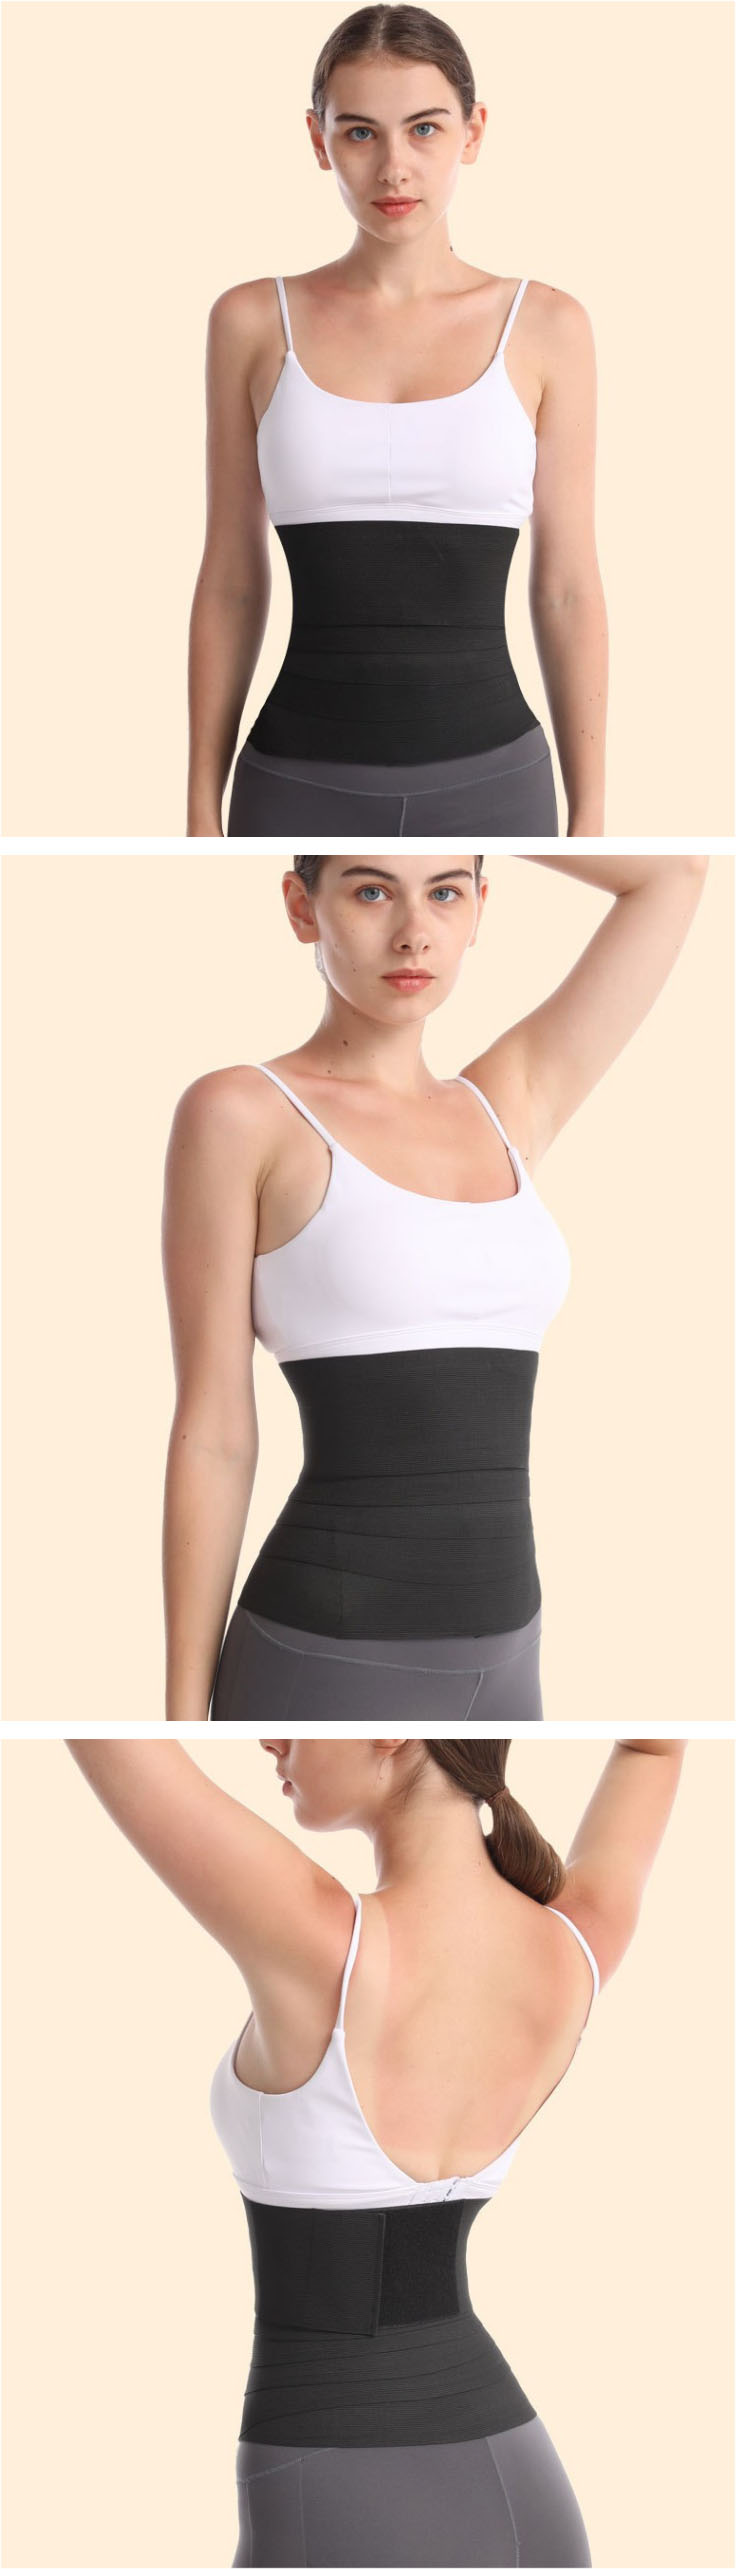 Ladies-Waist-Trainer-Shapewear-Belt-Slimming-Wrap-Belly-Belt-Resistance-Belt-Body-Shaper-Control-Bel-1906908-5